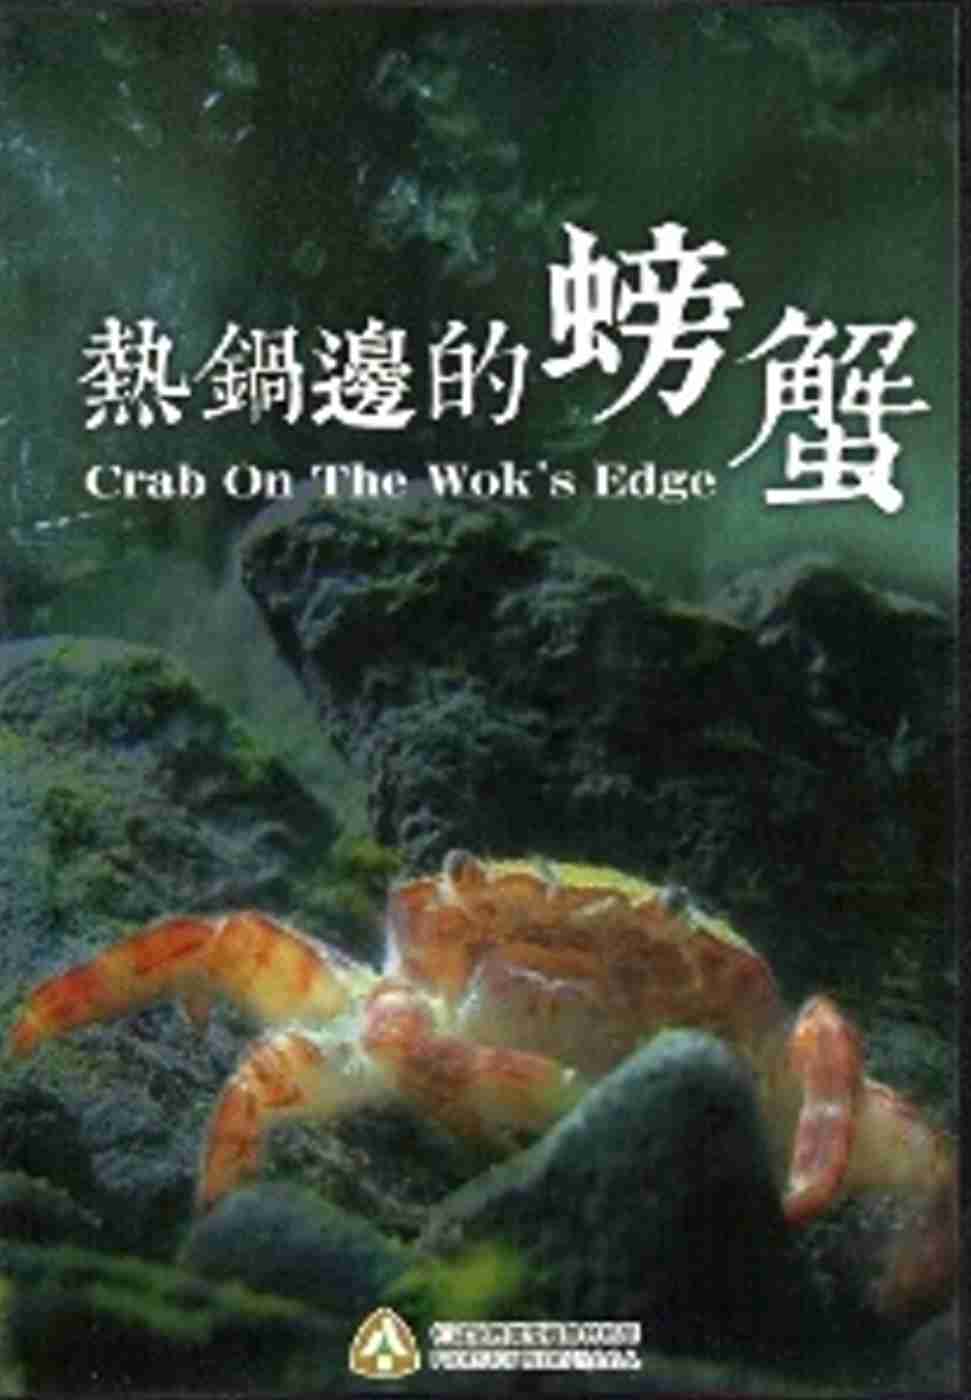 熱鍋邊的螃蟹-烏龜怪方蟹